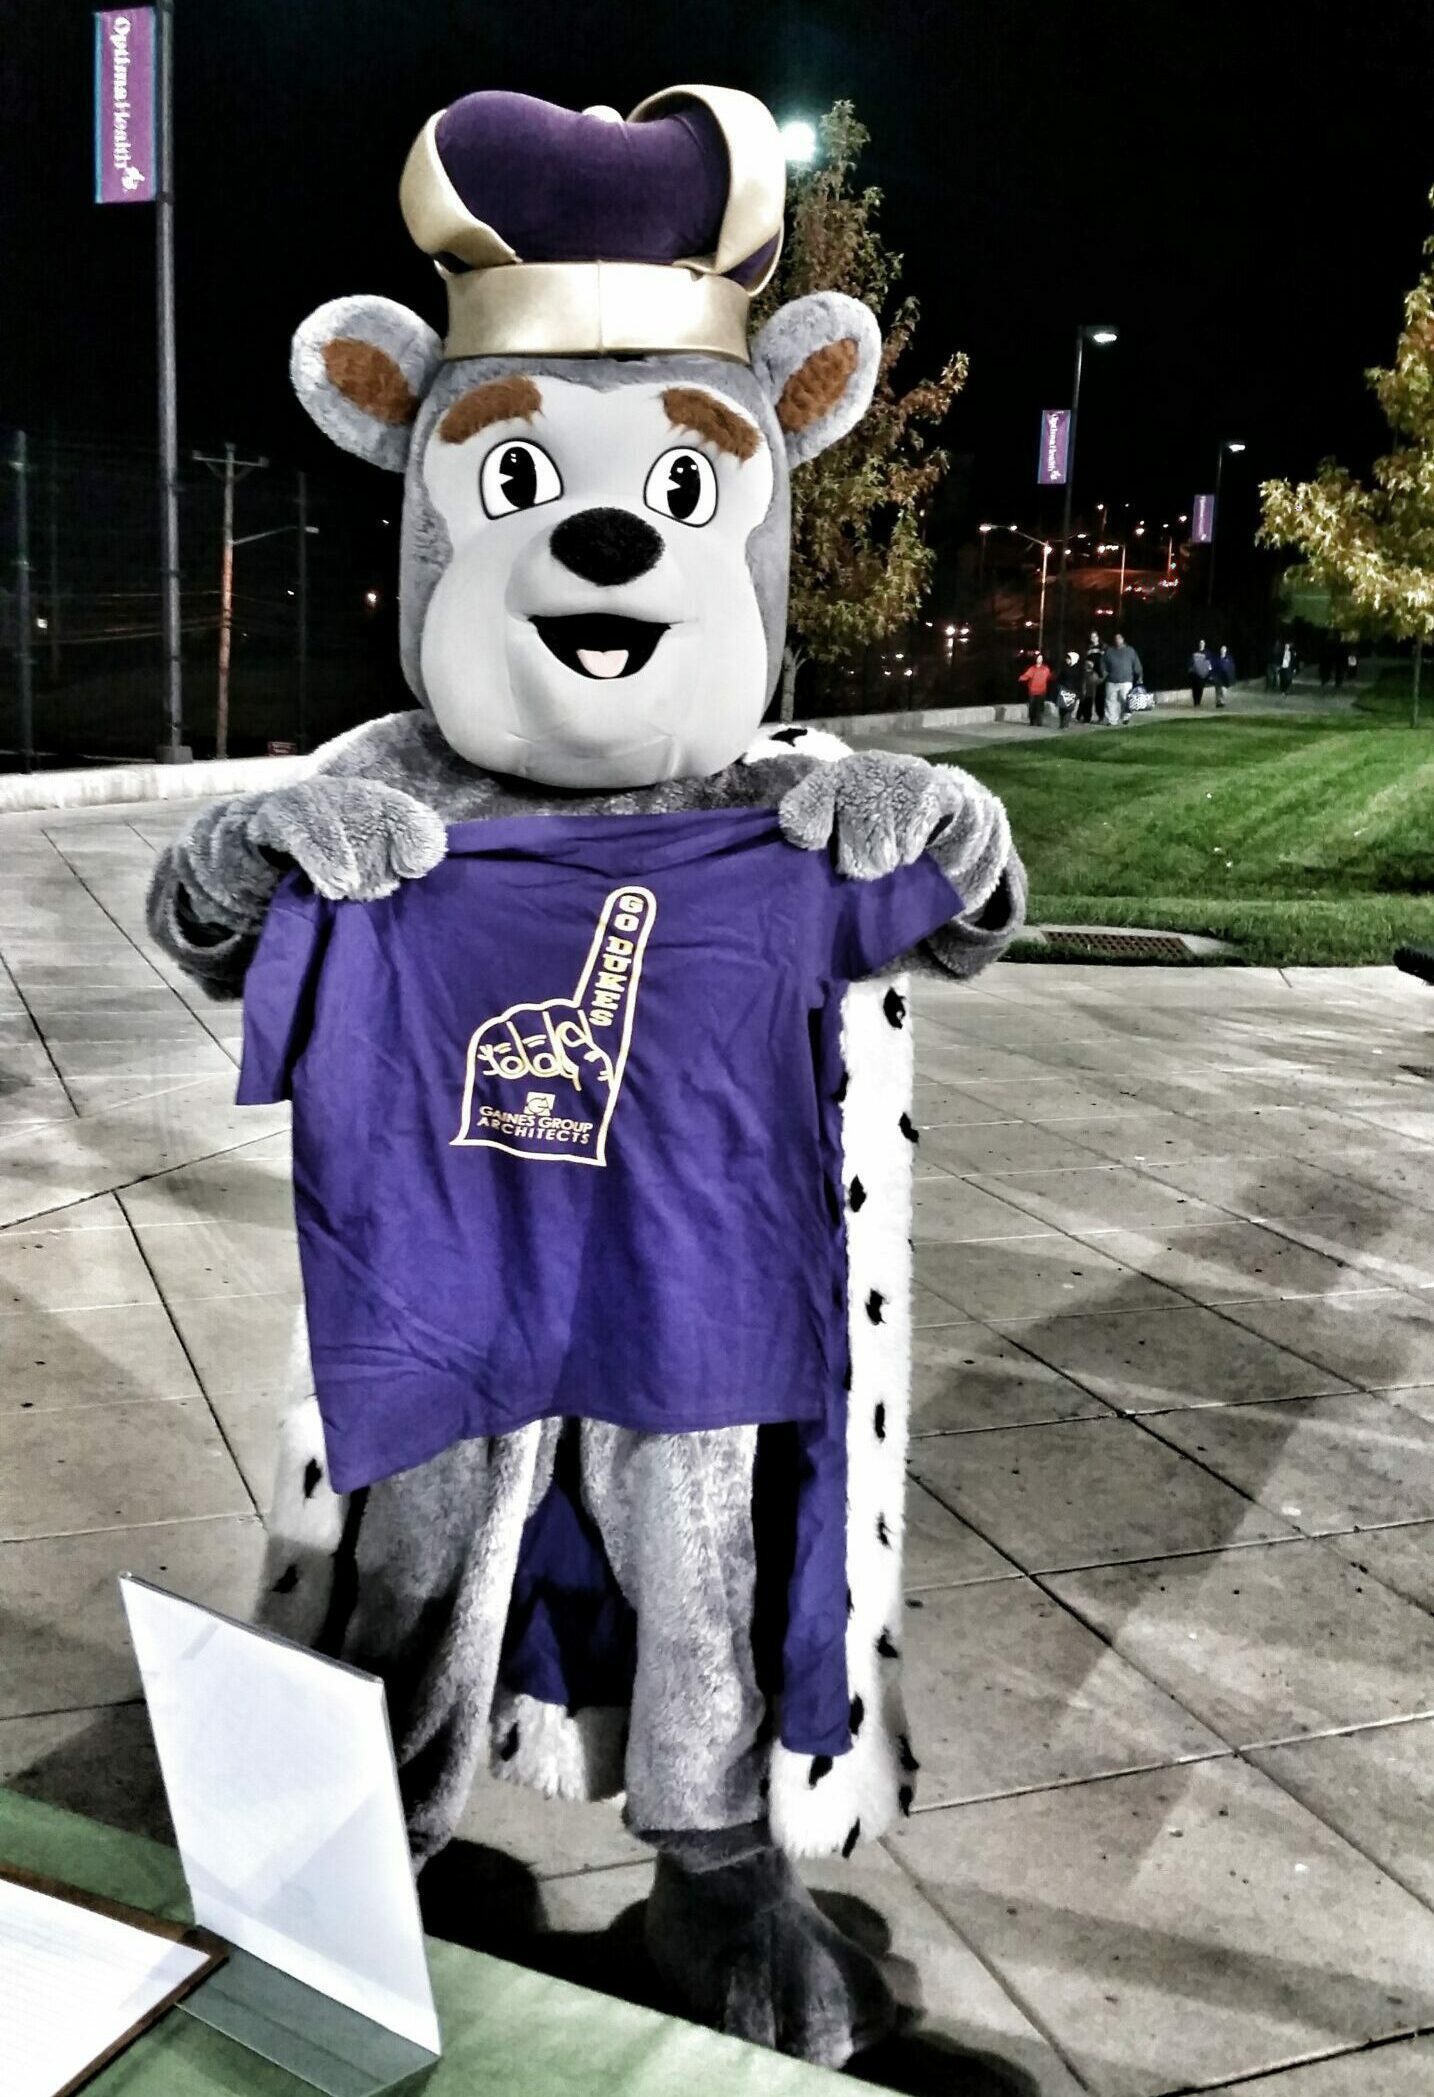 Duke dog holding gaines group t-shirt.